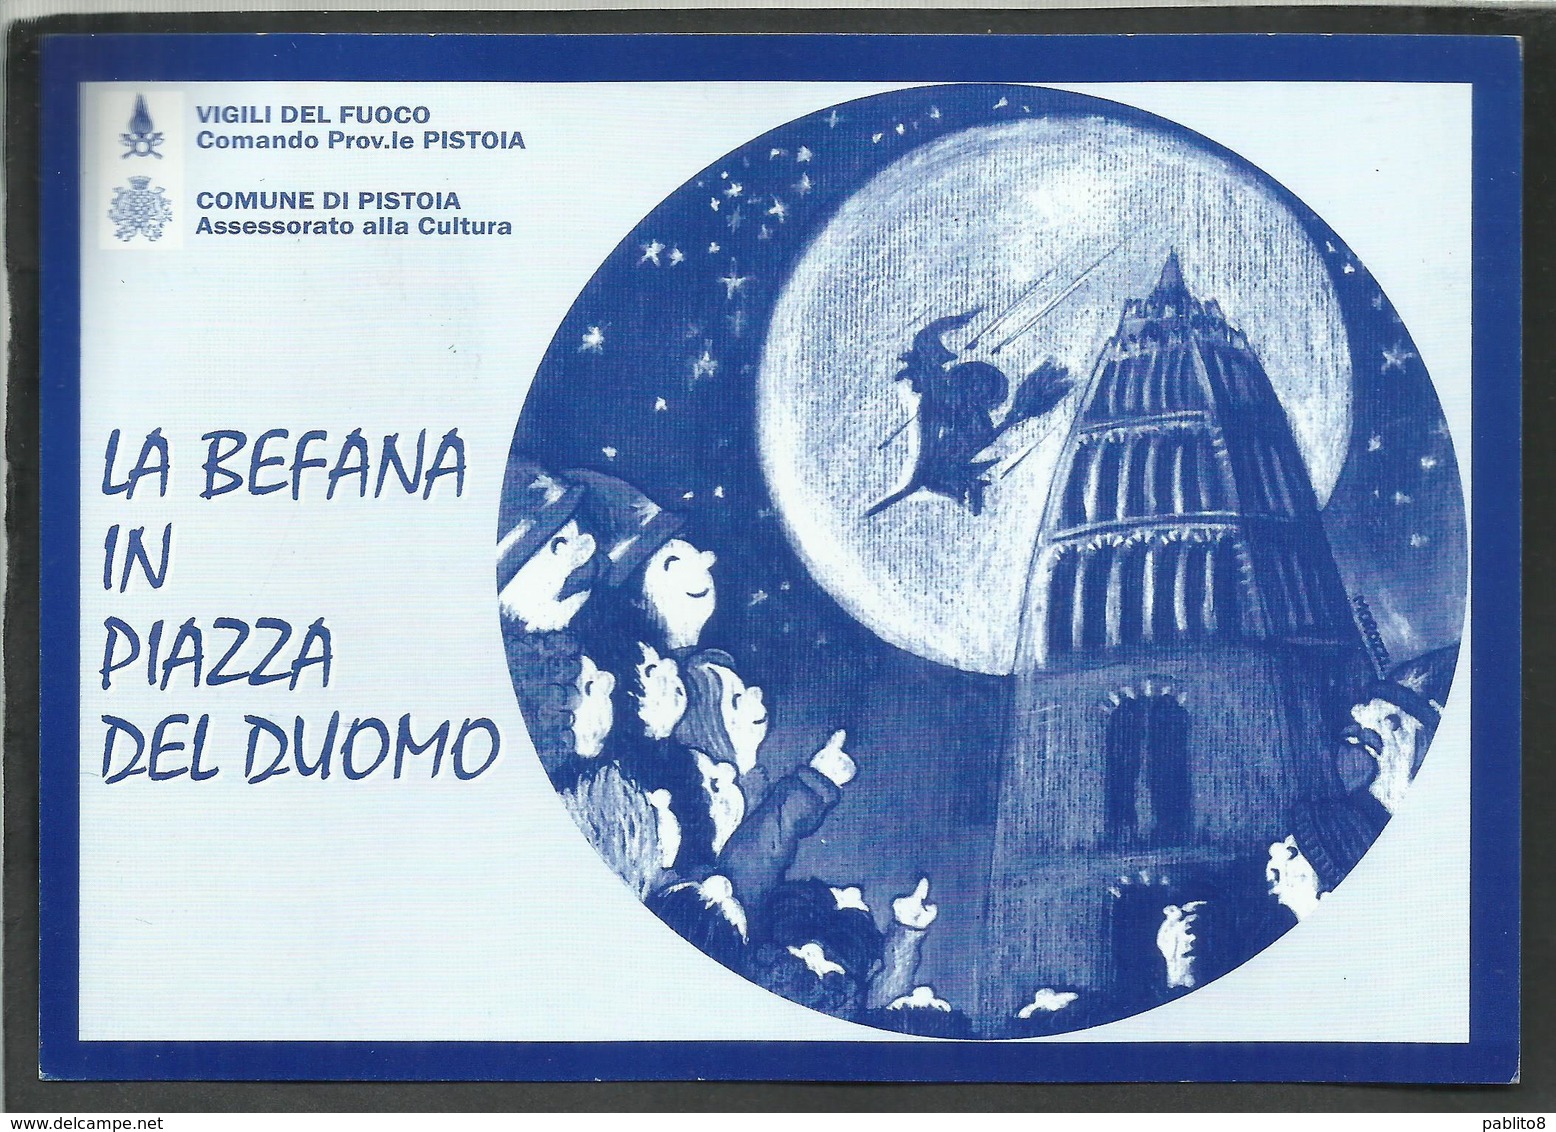 ITALIA REPUBBLICA ITALY REPUBLIC 7 1 2001 UNICEF LA BEFANA IN PIAZZA DEL DUOMO PISTOIA VIGILI DEL FUOCO CARTOLINA CARD - Manifestaciones